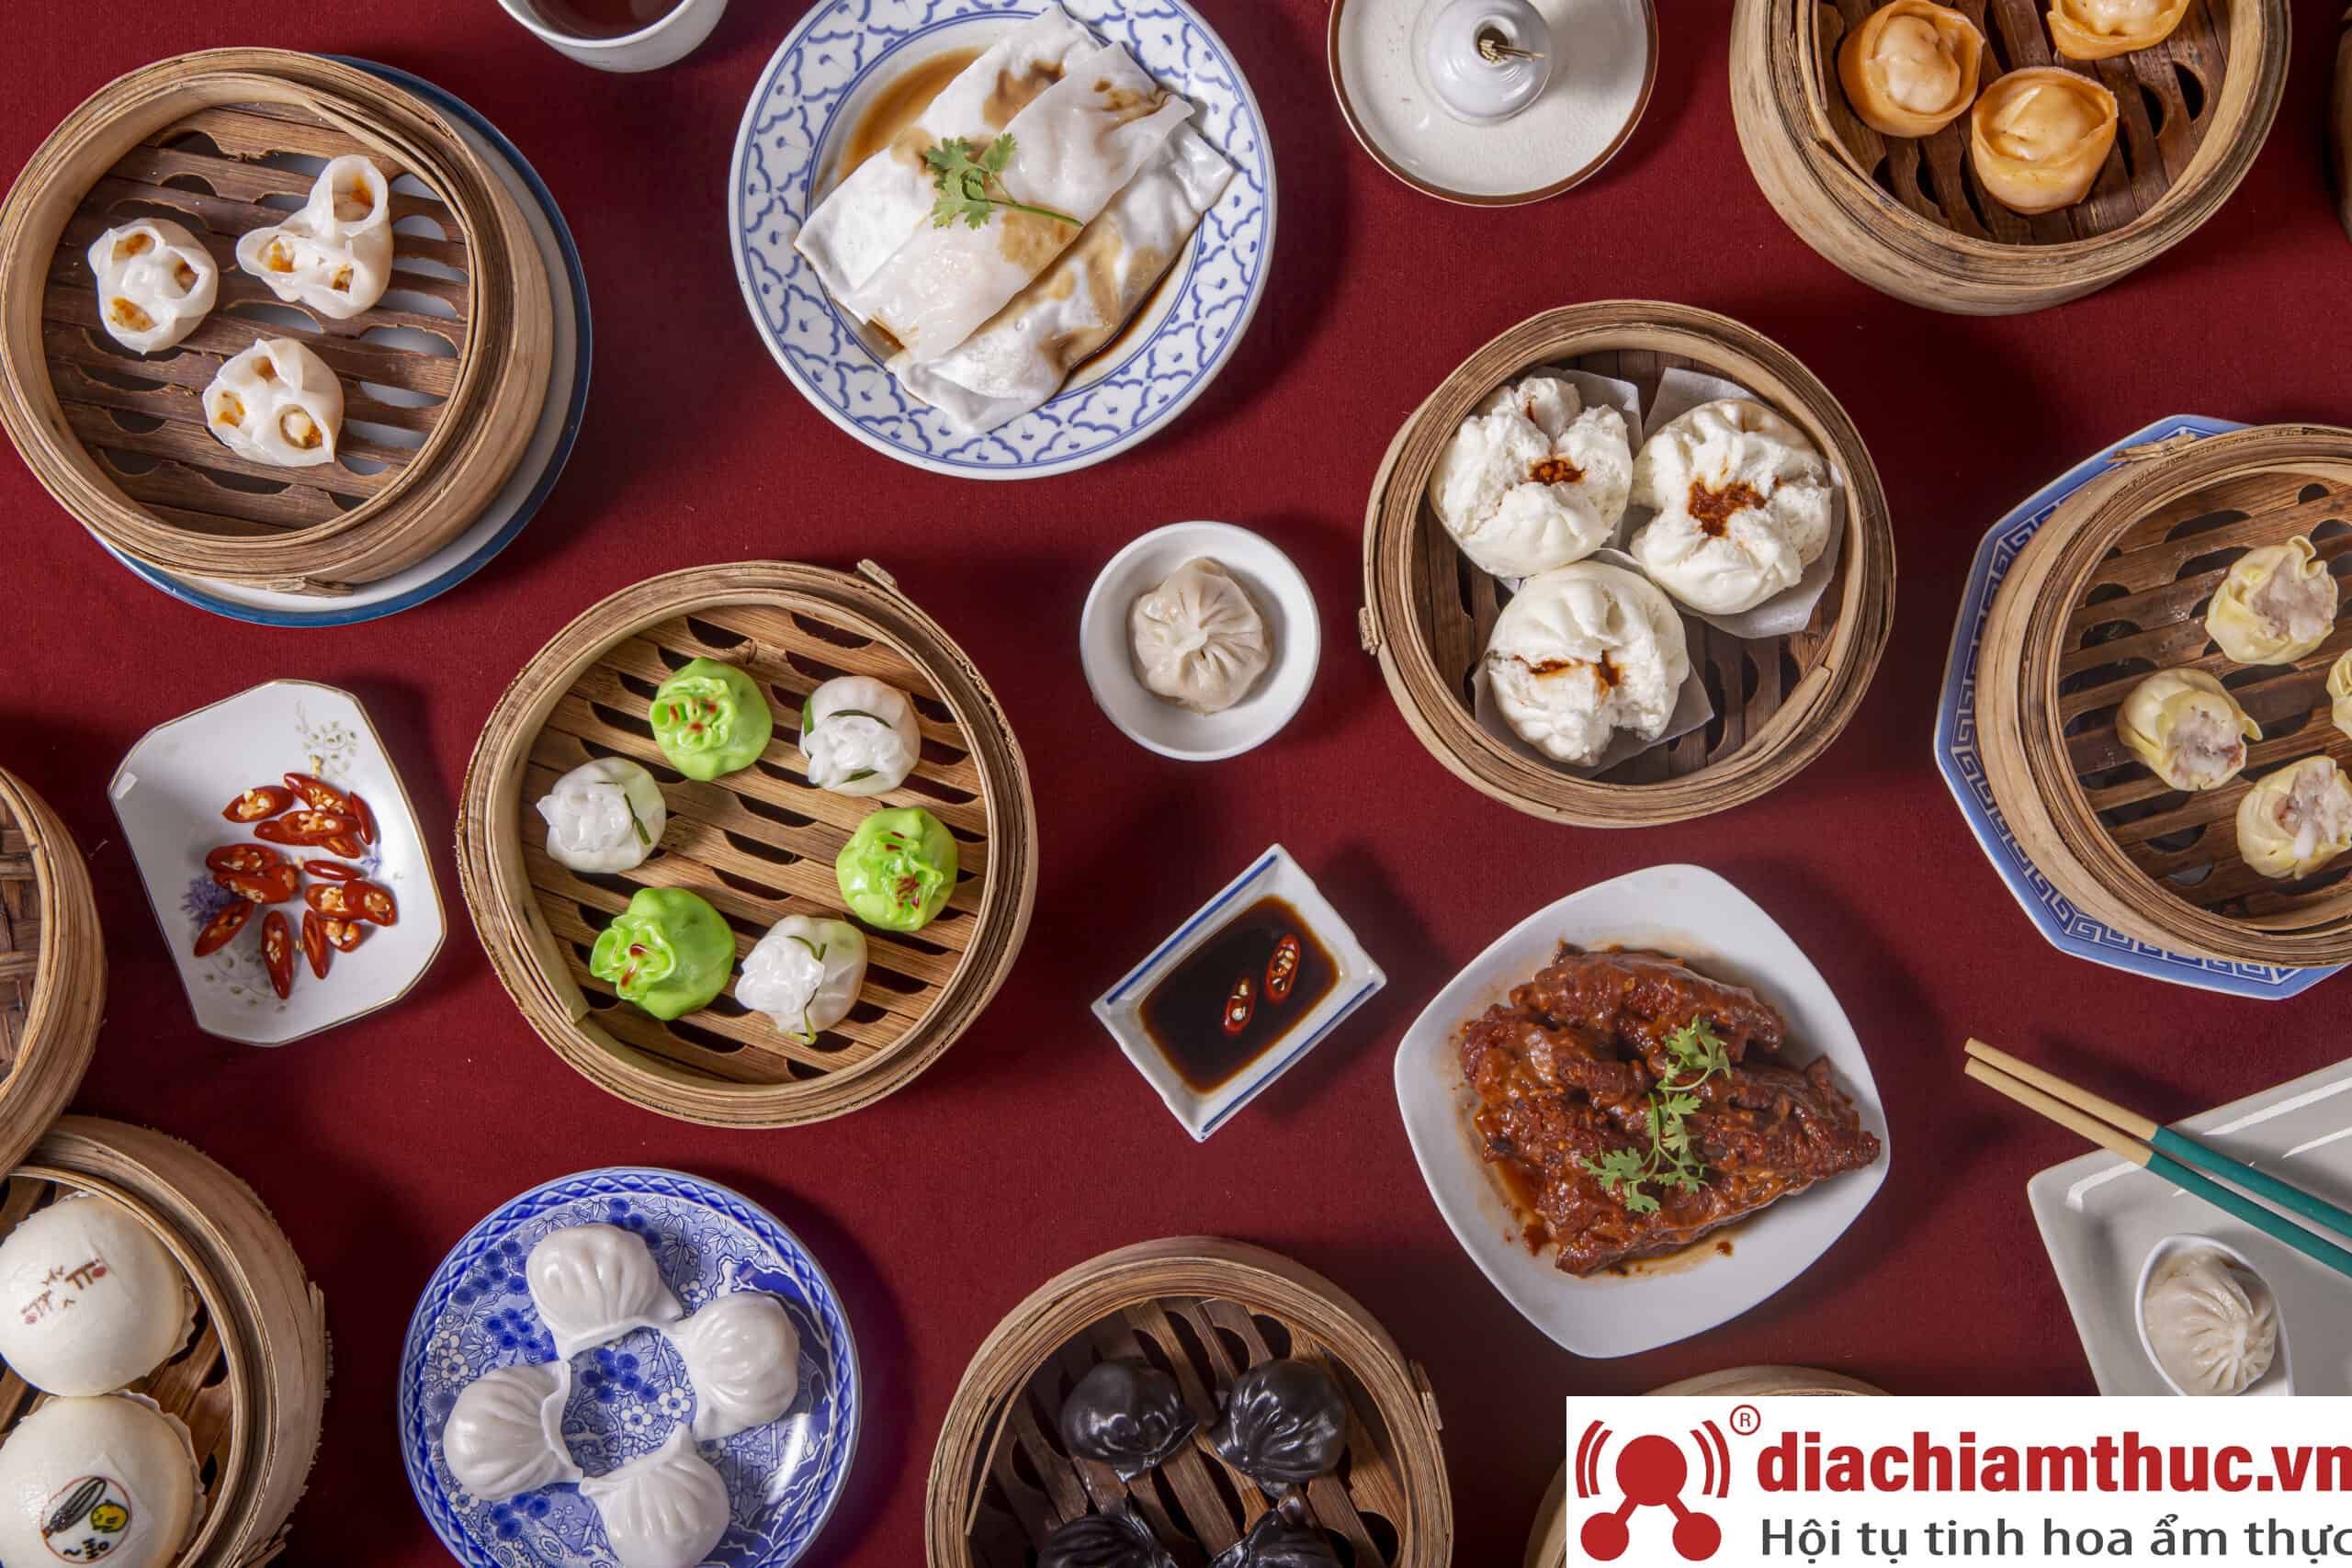 Haochi - Dimsum Taipei - Tiệm Dimsum ăn tối quận Đống Đa chất lượng